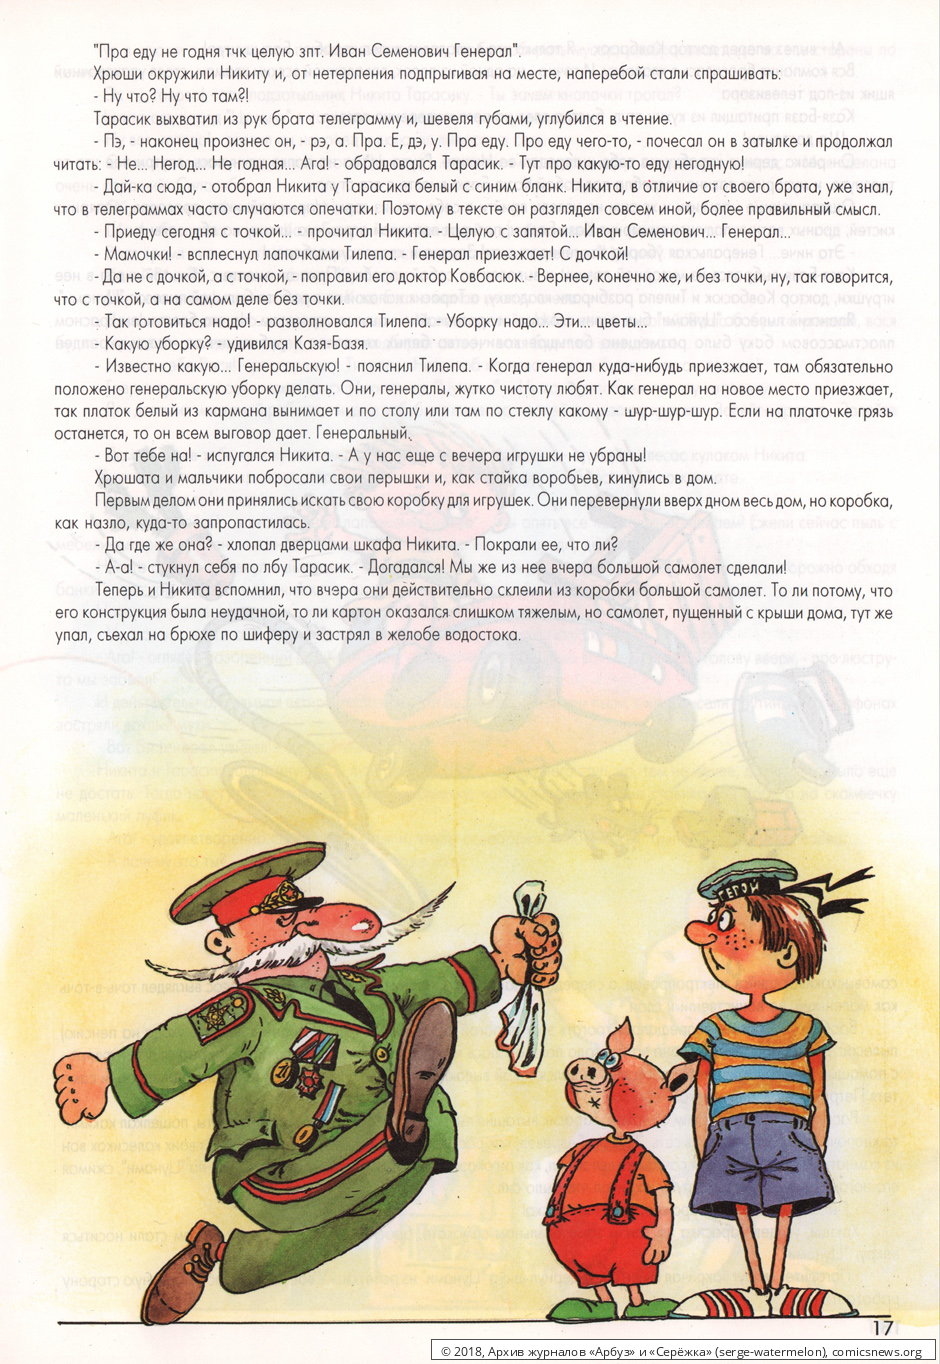 № 16 ( "Серёжжка" № 2 / 1996 ) - Архив журналов «Арбуз» и «Серёжка»